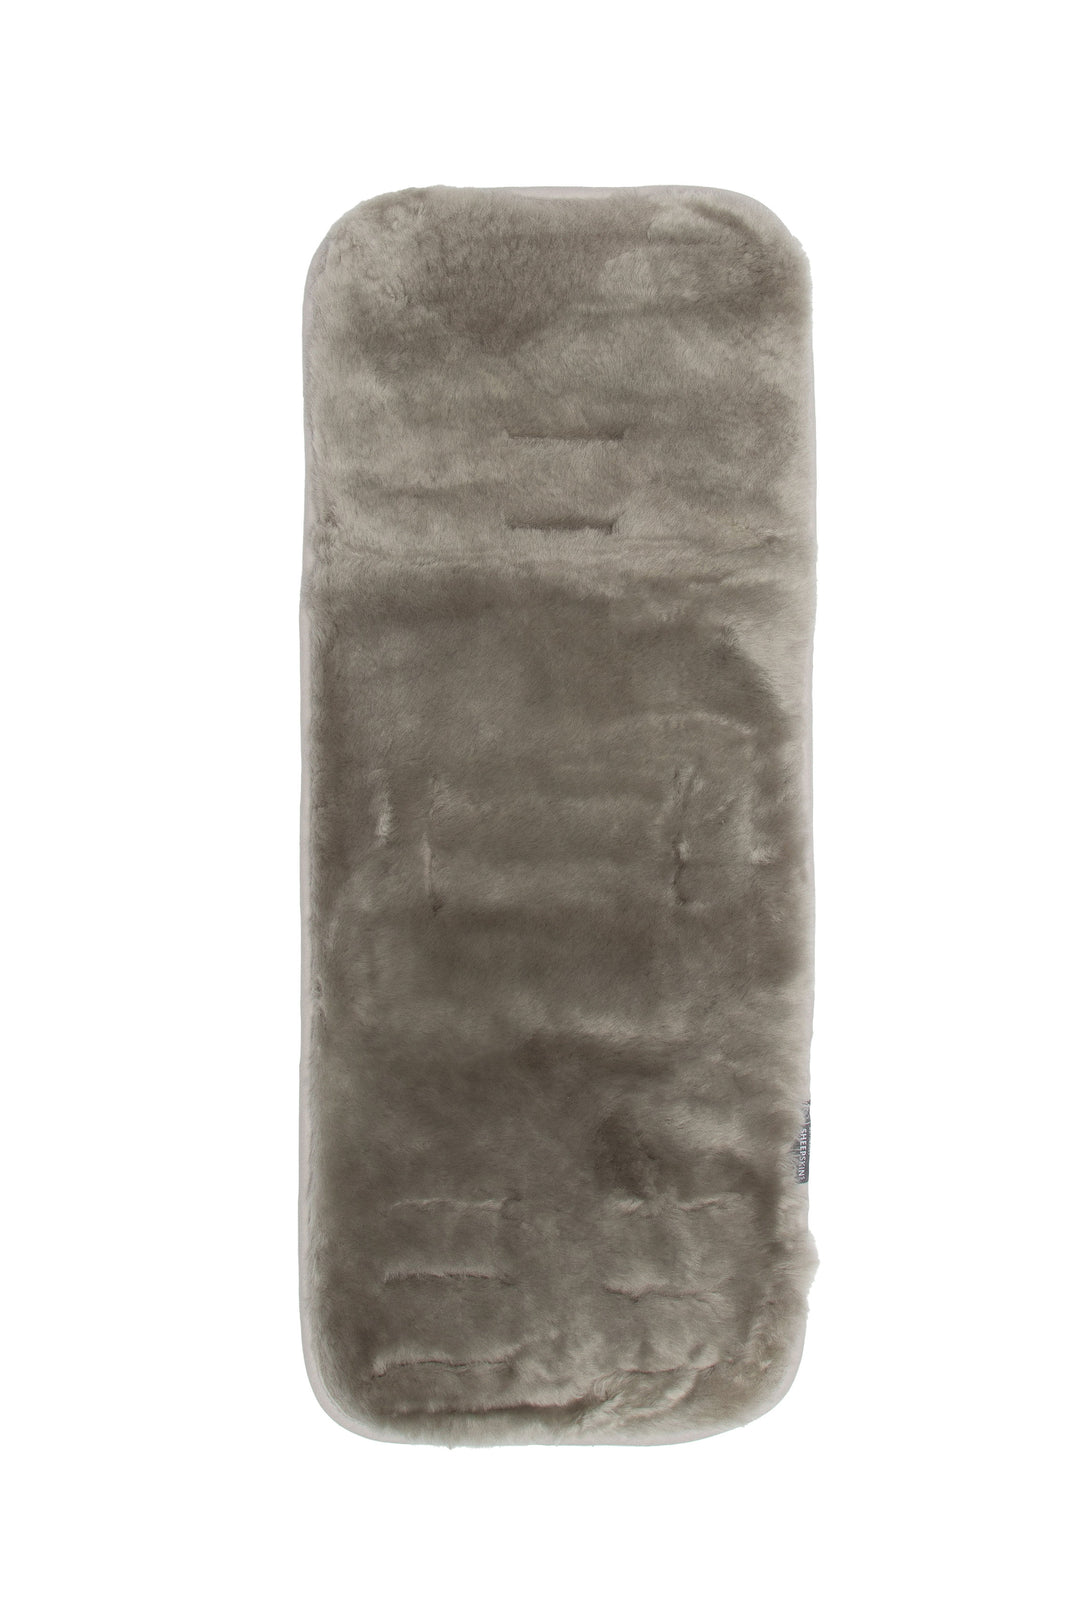 Naturally Sheepskins - Sheepskin Pram Liner - Original Grey